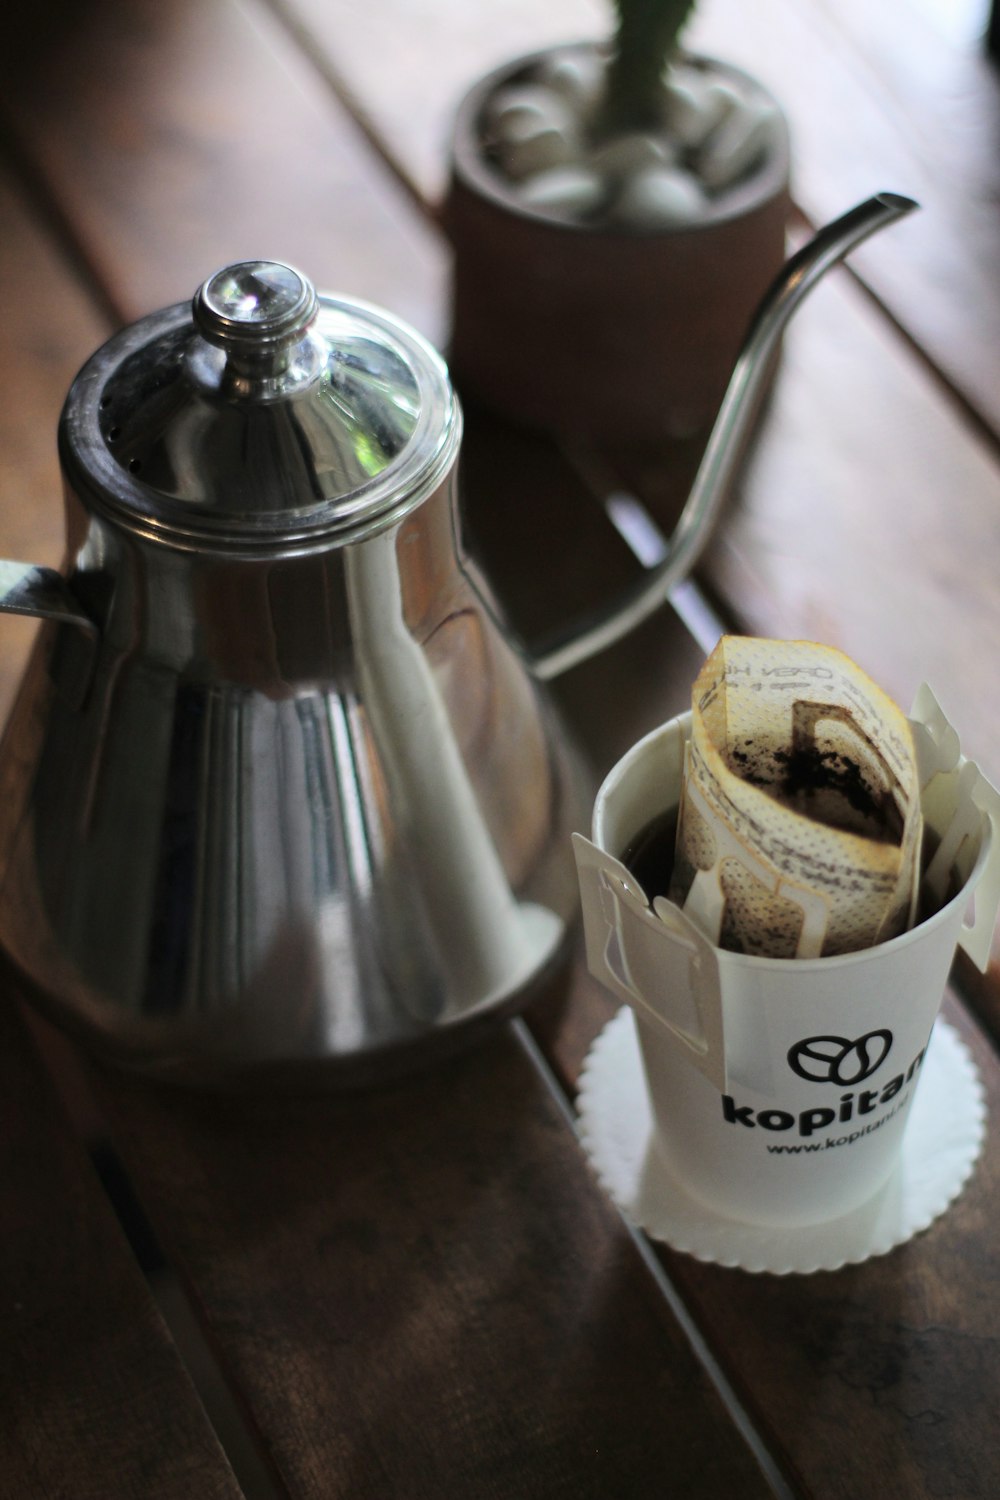 stainless steel teapot beside white ceramic mug